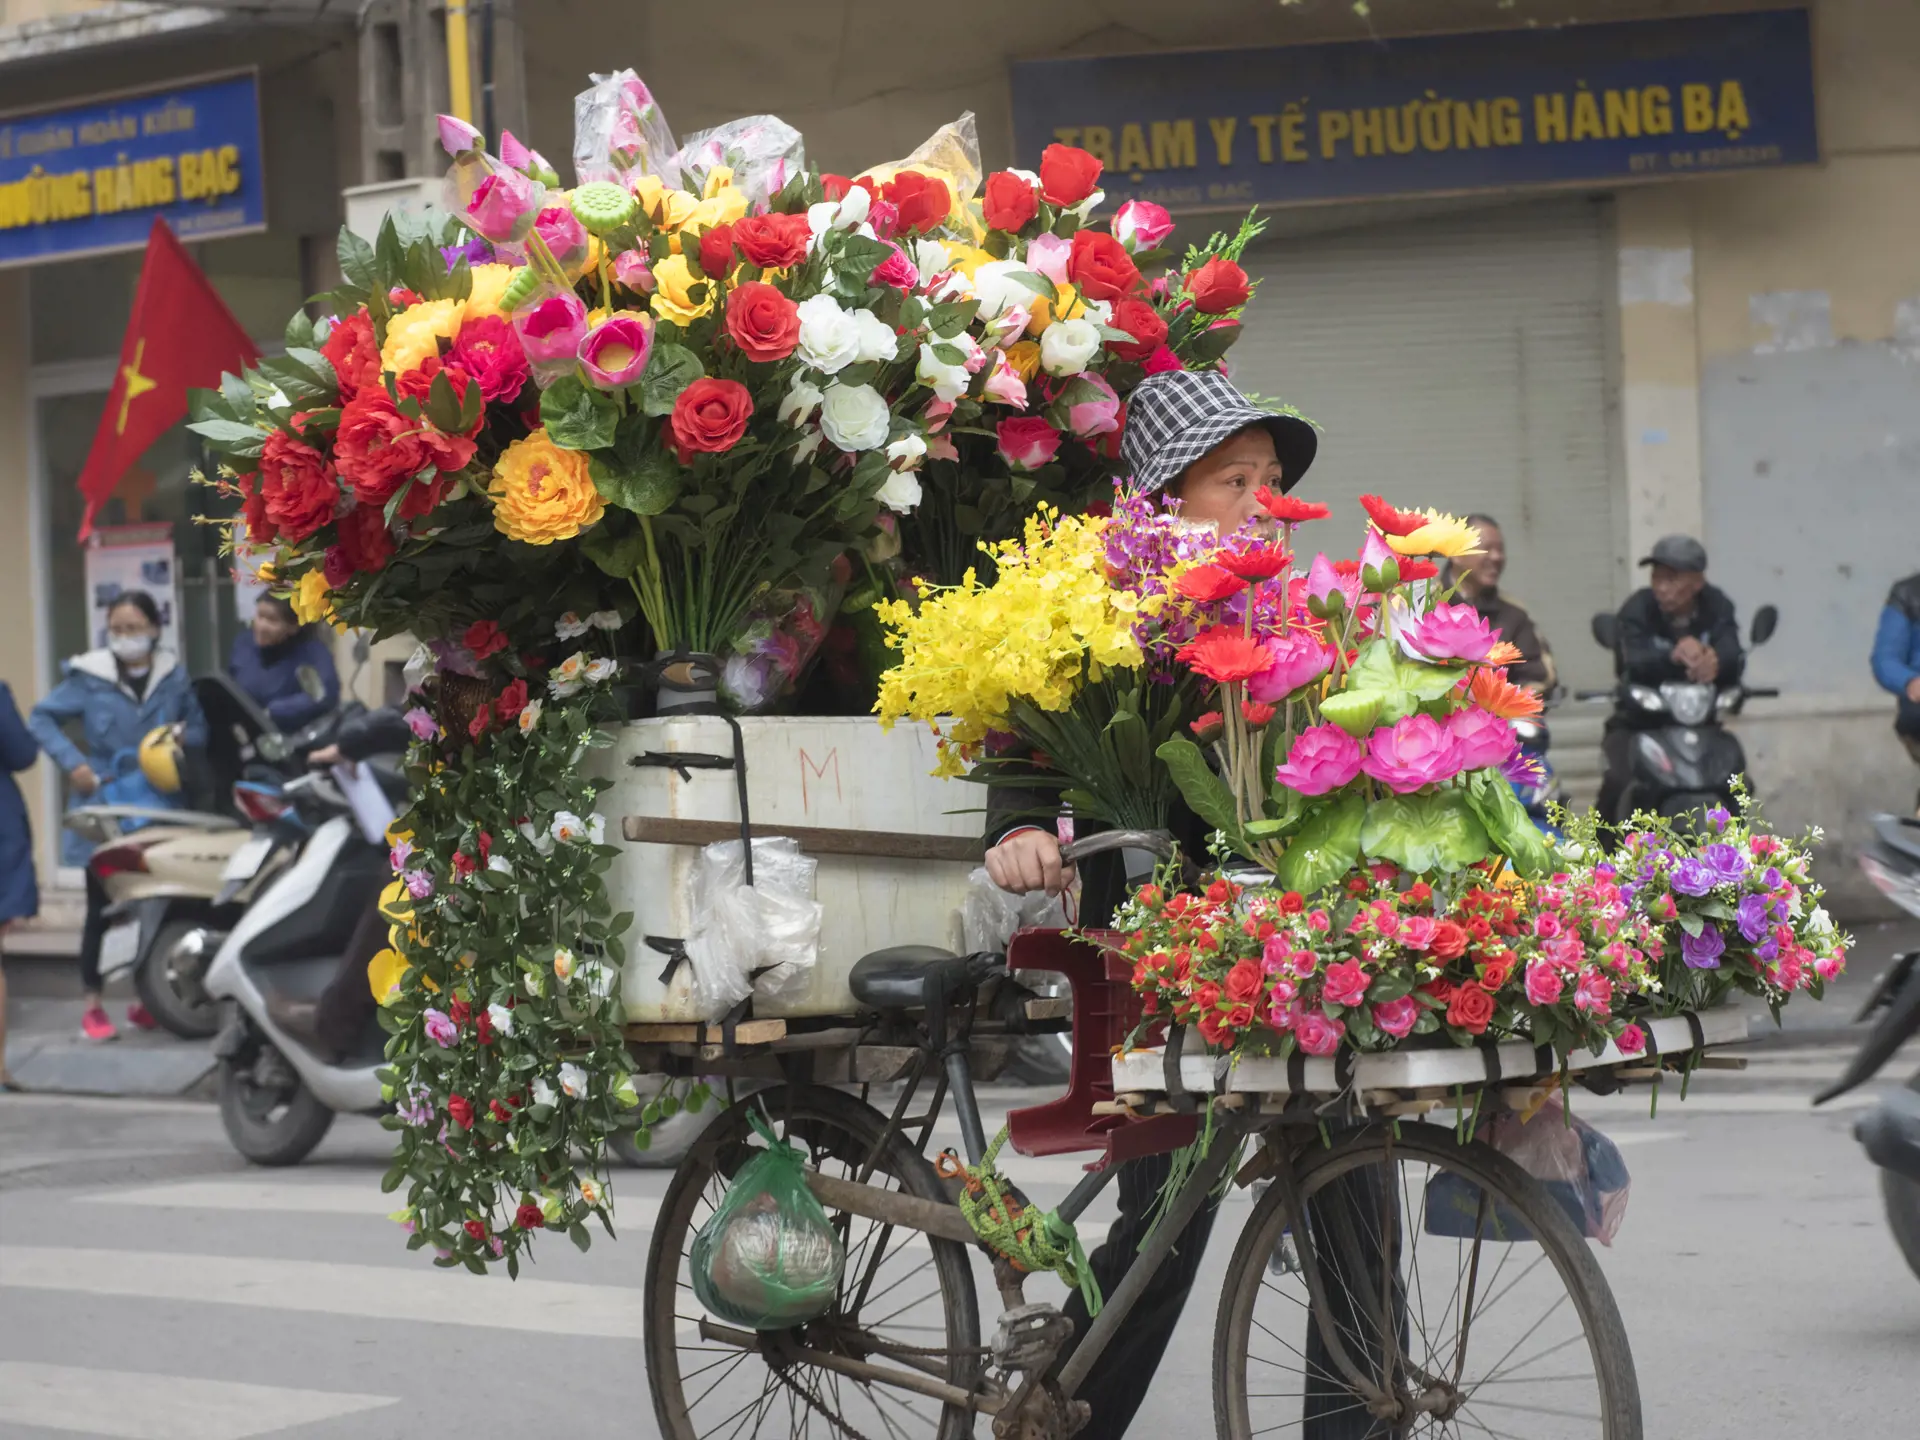 Blomster på cykel.jpg